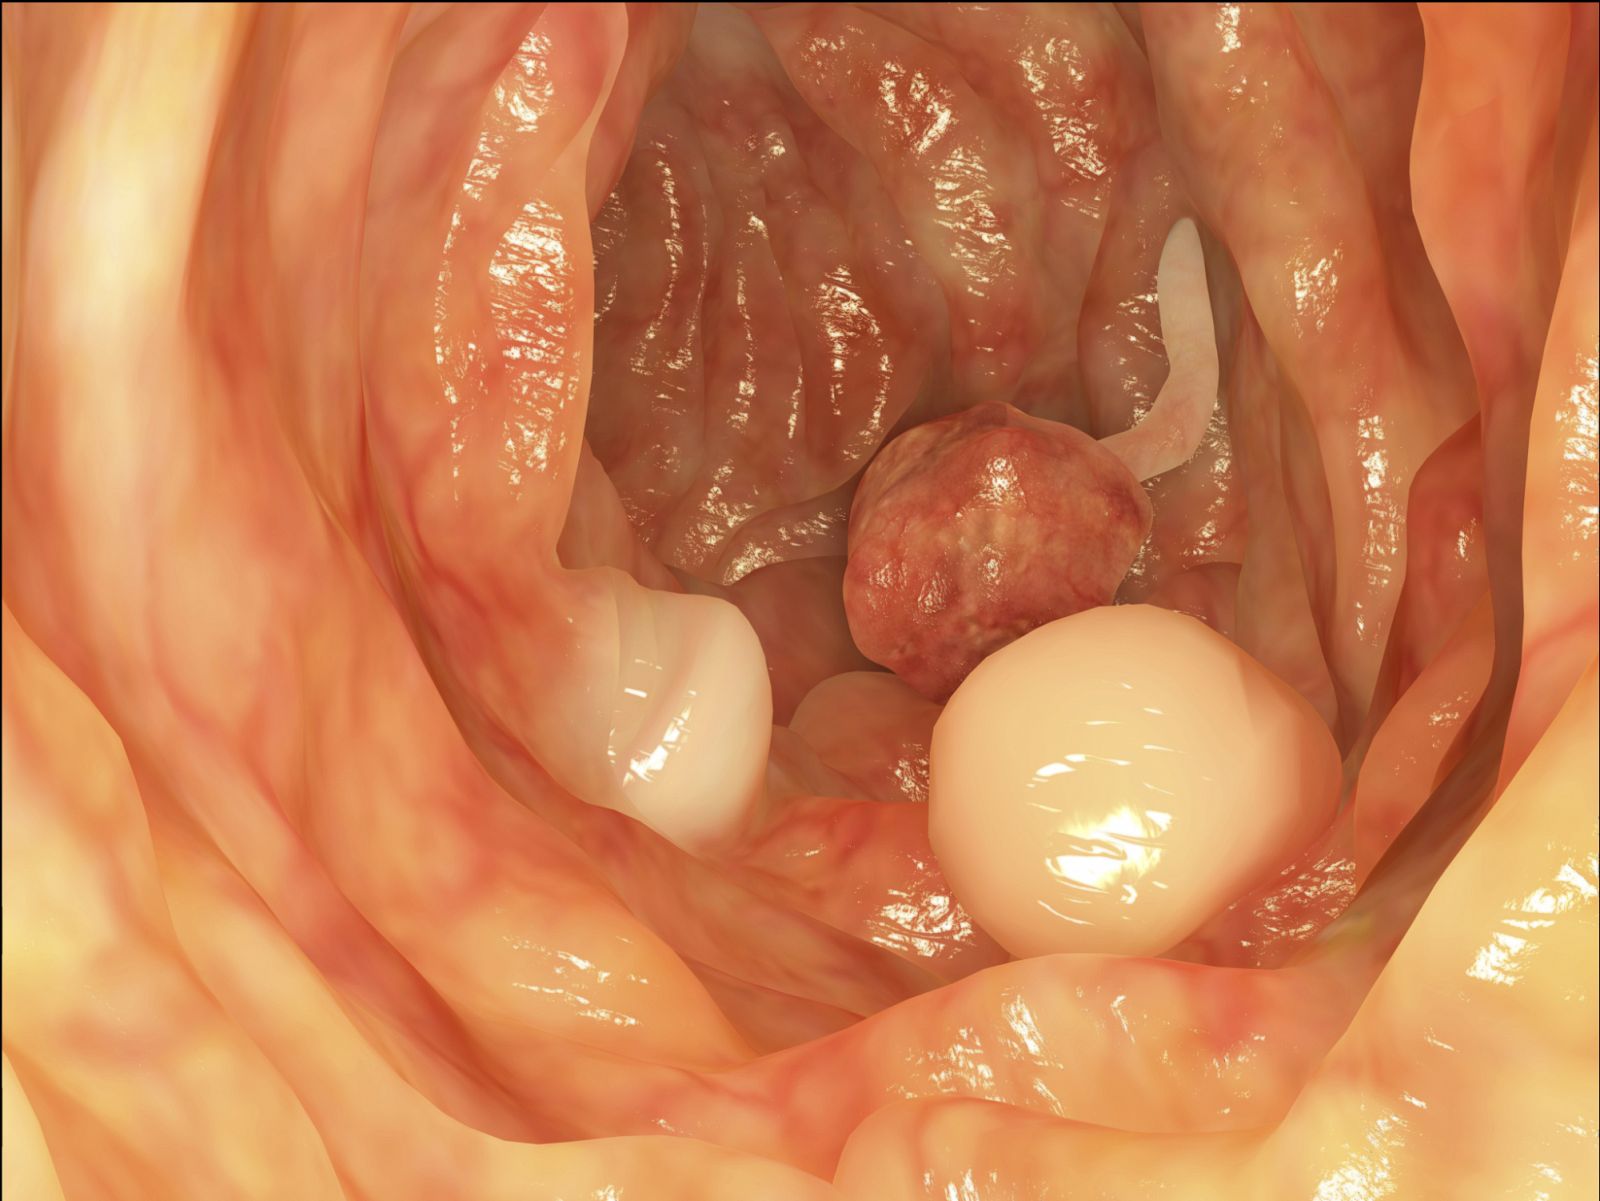 El colon dispone de un mecanismo de seguridad que limita que los pólipos intestinales se conviertan en tumores.